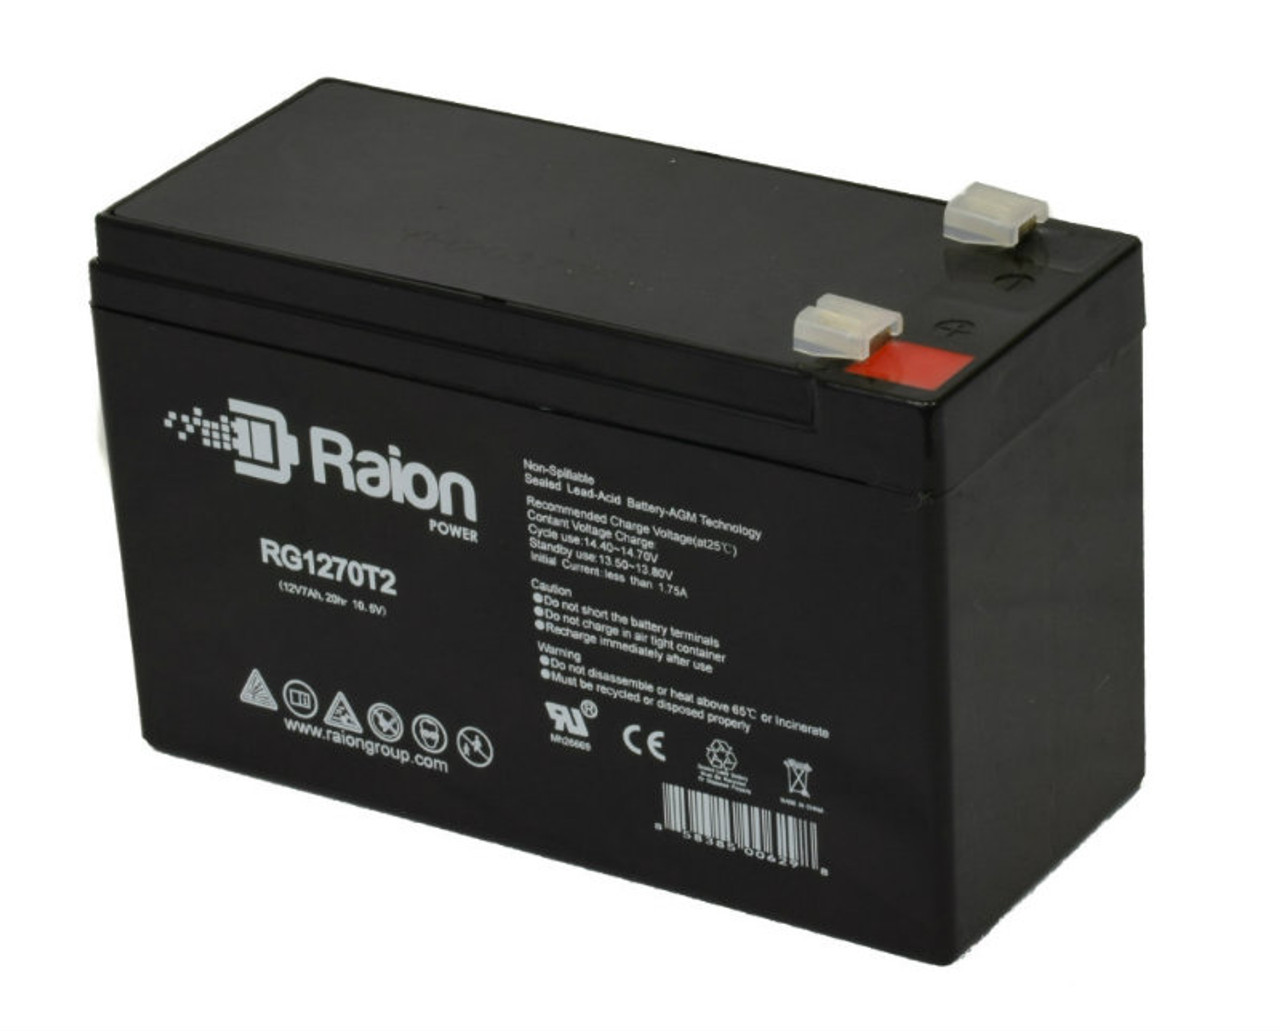 Raion Power RG1270T1 12V 7Ah Non-Spillable Replacement Battery for BatteryMart SLA-12V7-F1